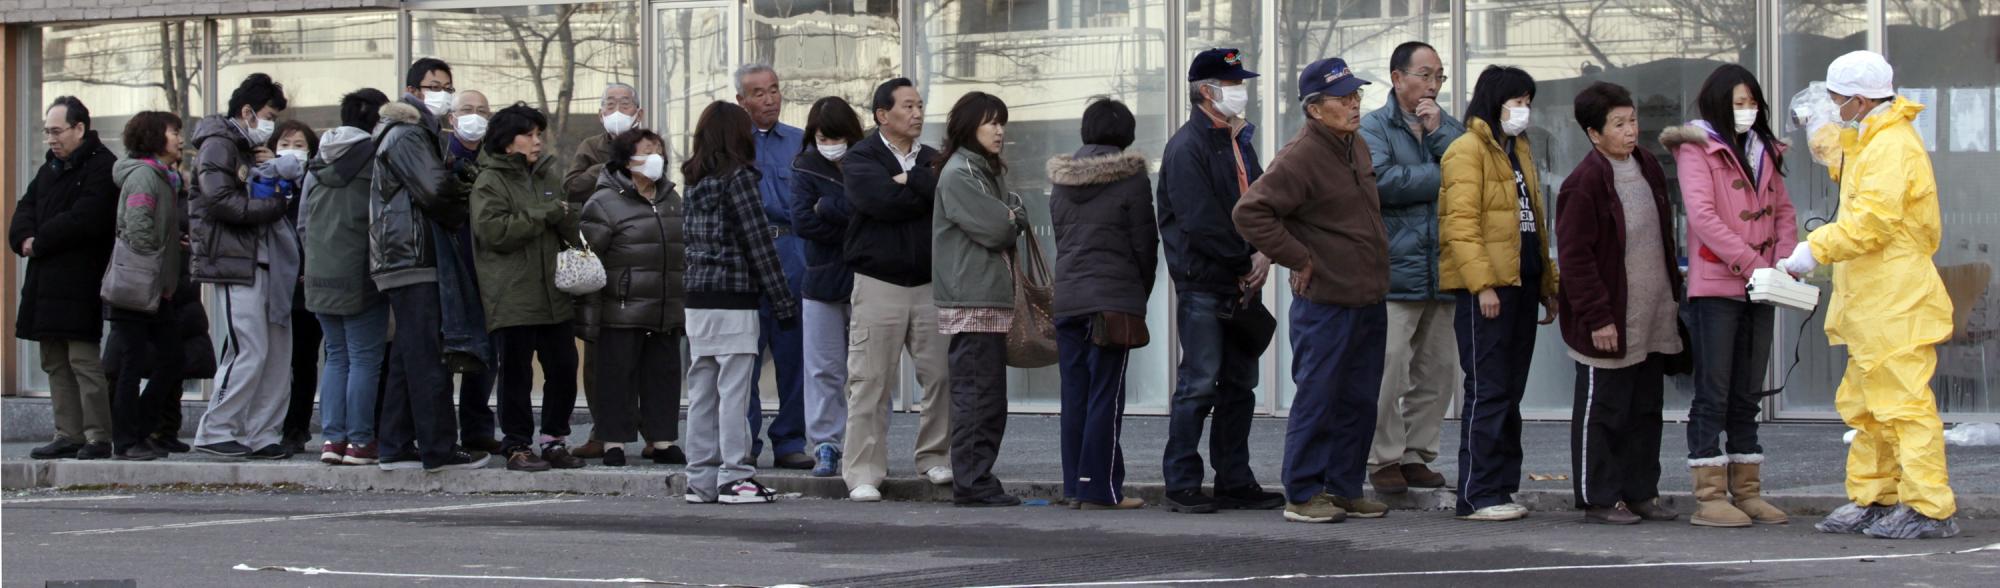 日本强震第四天图集：抢购限量商品 接受辐射检查